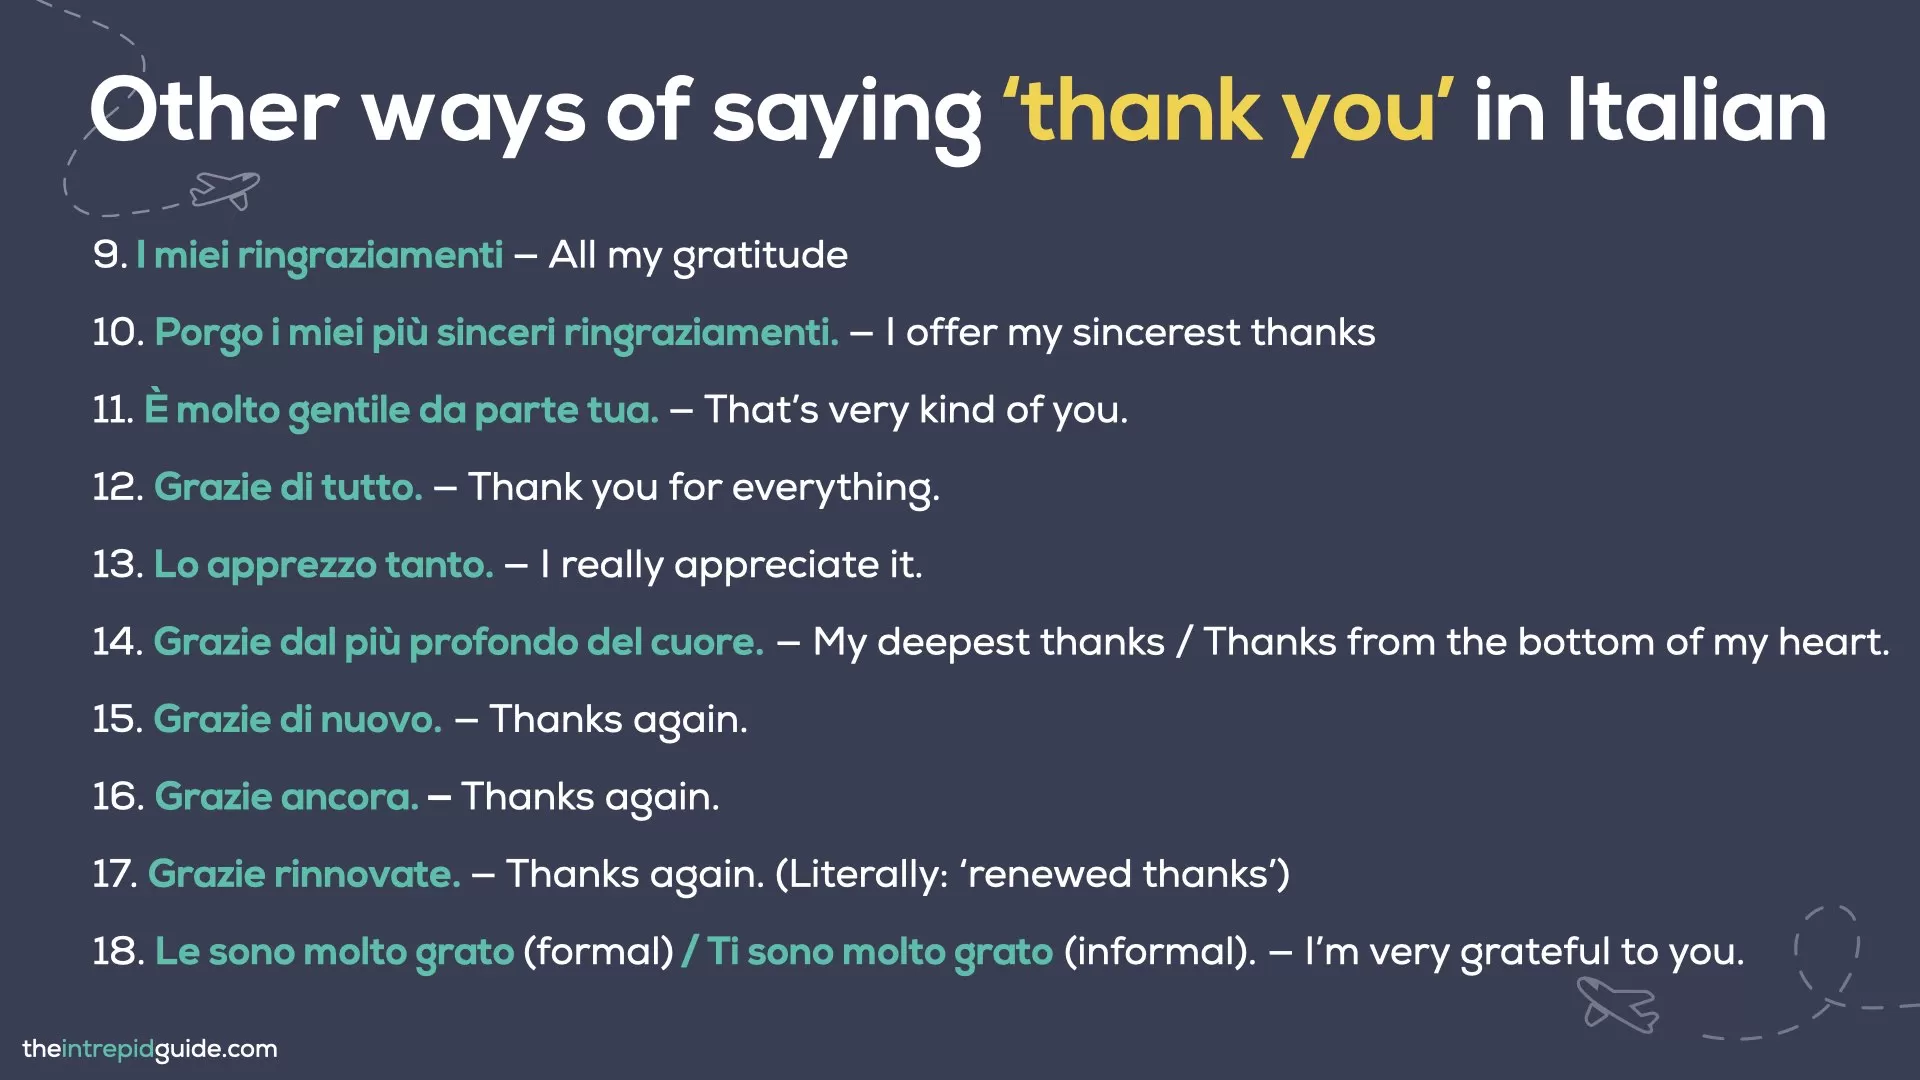 How to say thank you in Italian - I miei ringraziamenti, grazie di tutto, grazie di nuovo